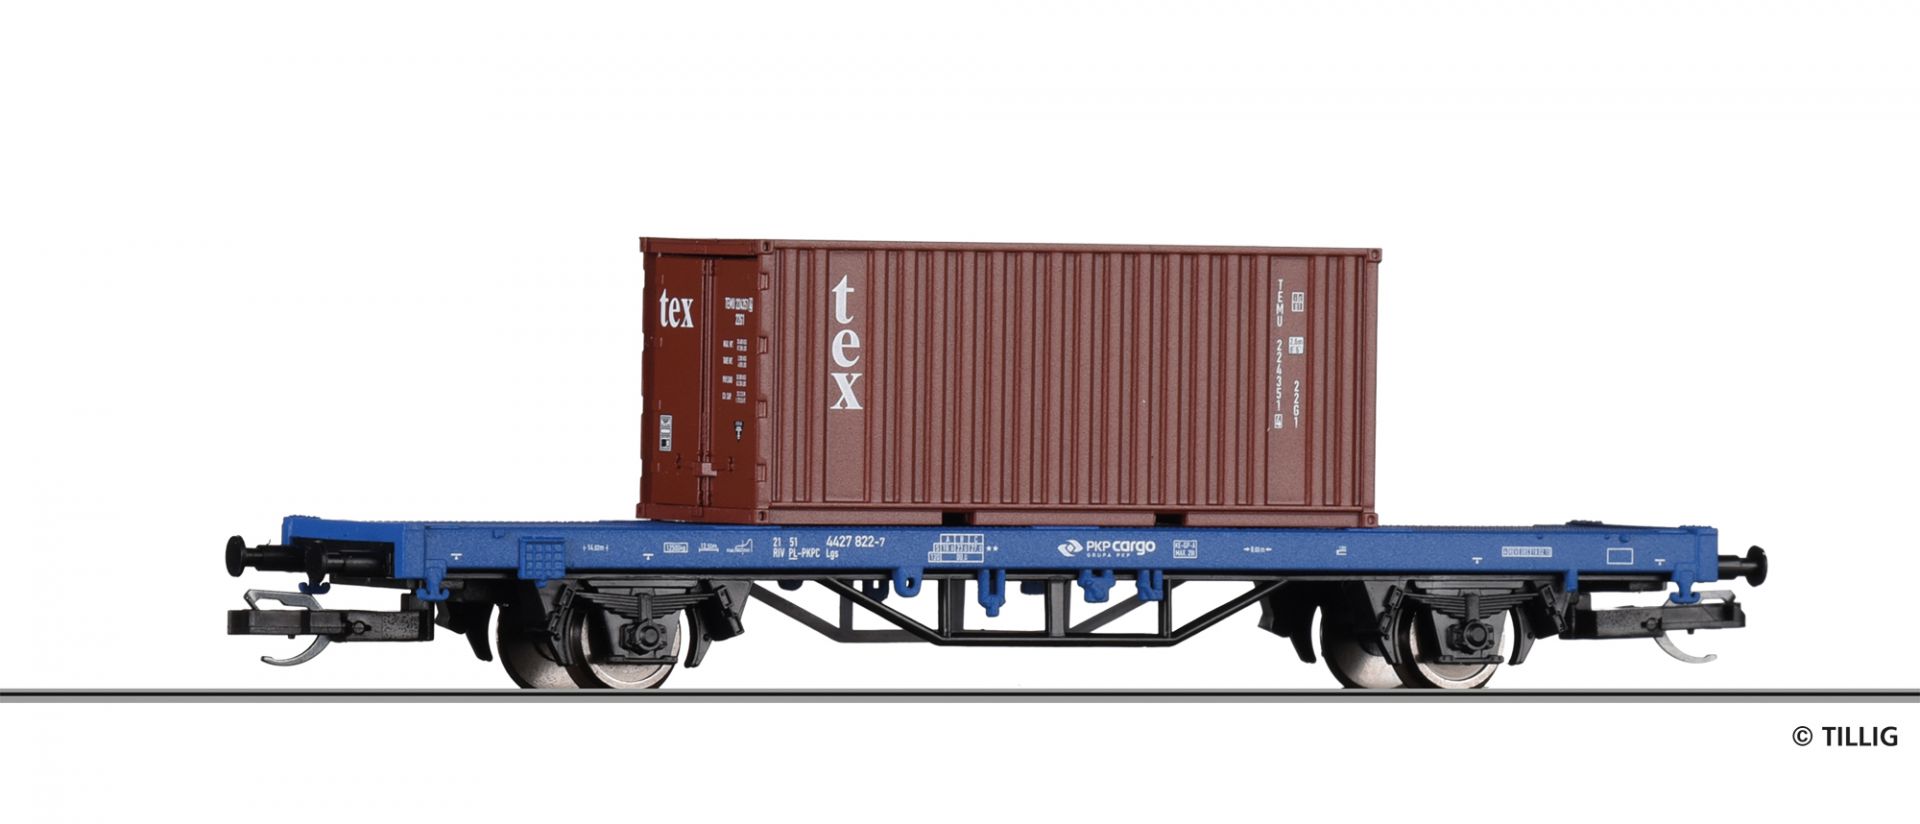 17481 | START-Containertragwagen PKP Cargo